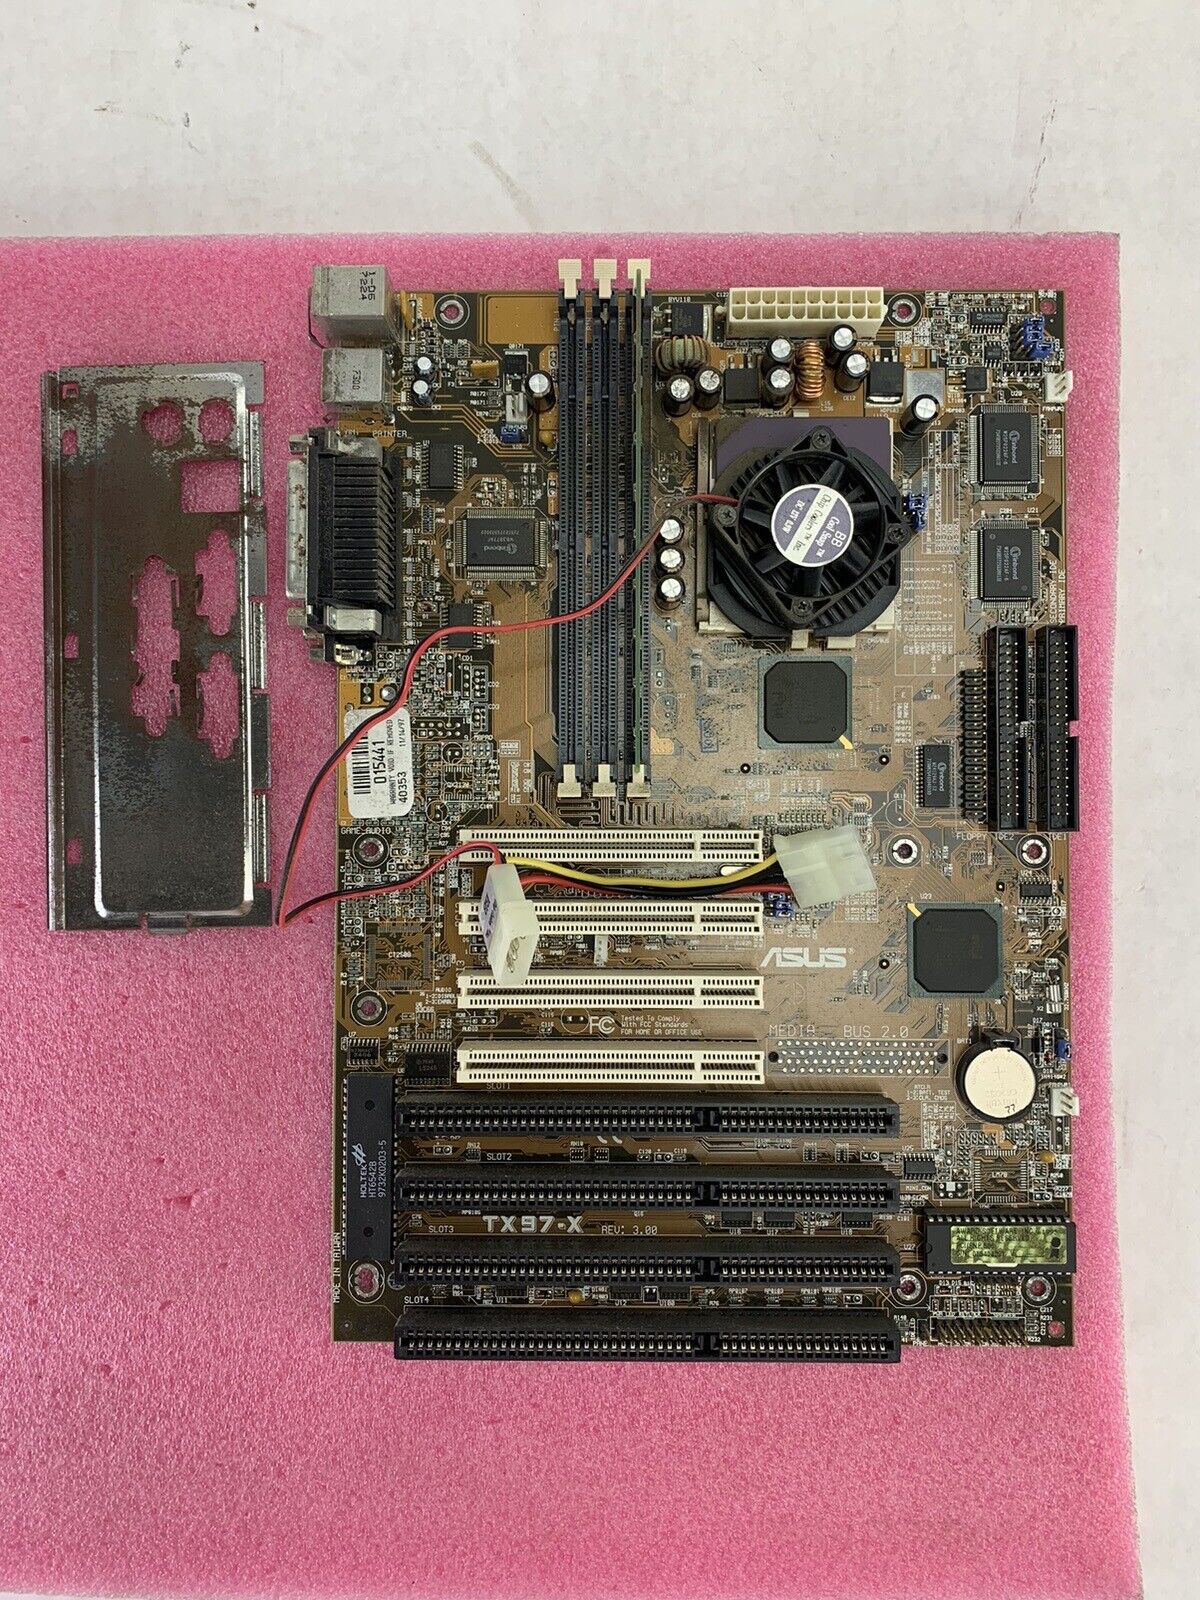 Asus TX97-X Motherboard Intel Pentium MMX 166MHz 16MB RAM w/Shield